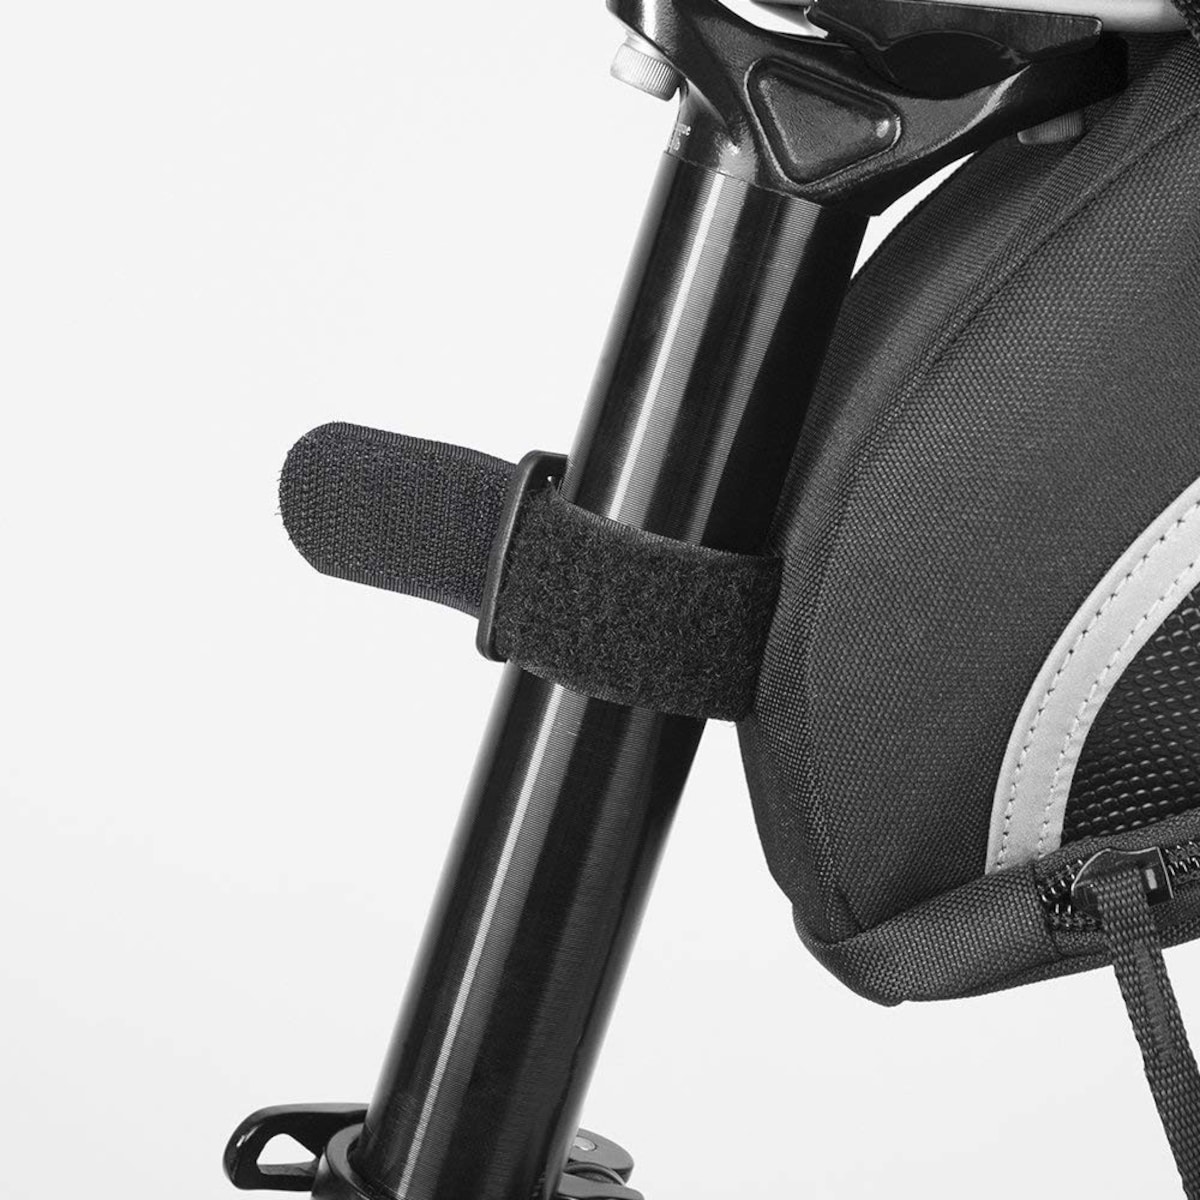  ストラップ式 自転車バッグ シートバッグ 容量拡張画像3 